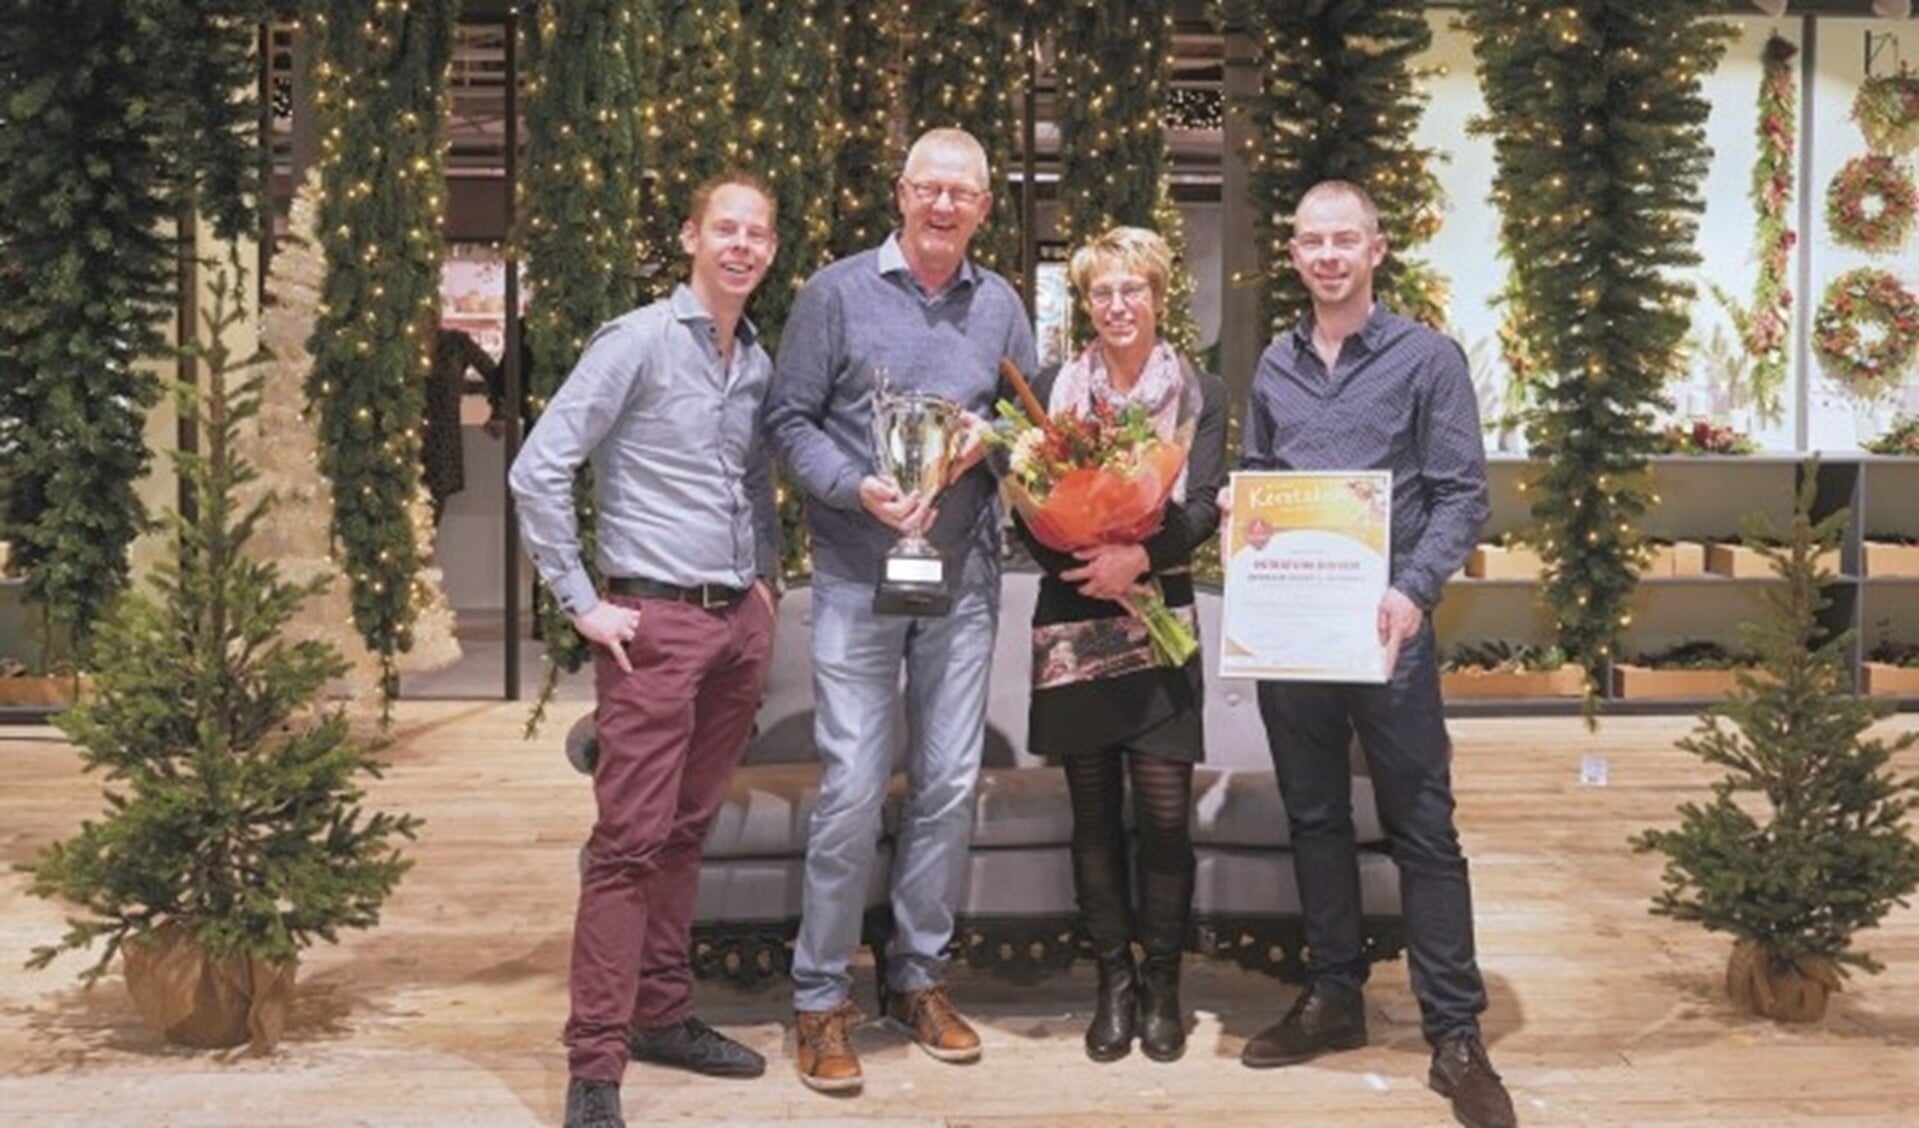 V.l.n.r.: Nico Nusselder, Gerard Niesink, Karin Boon en Wouter Nusselder.